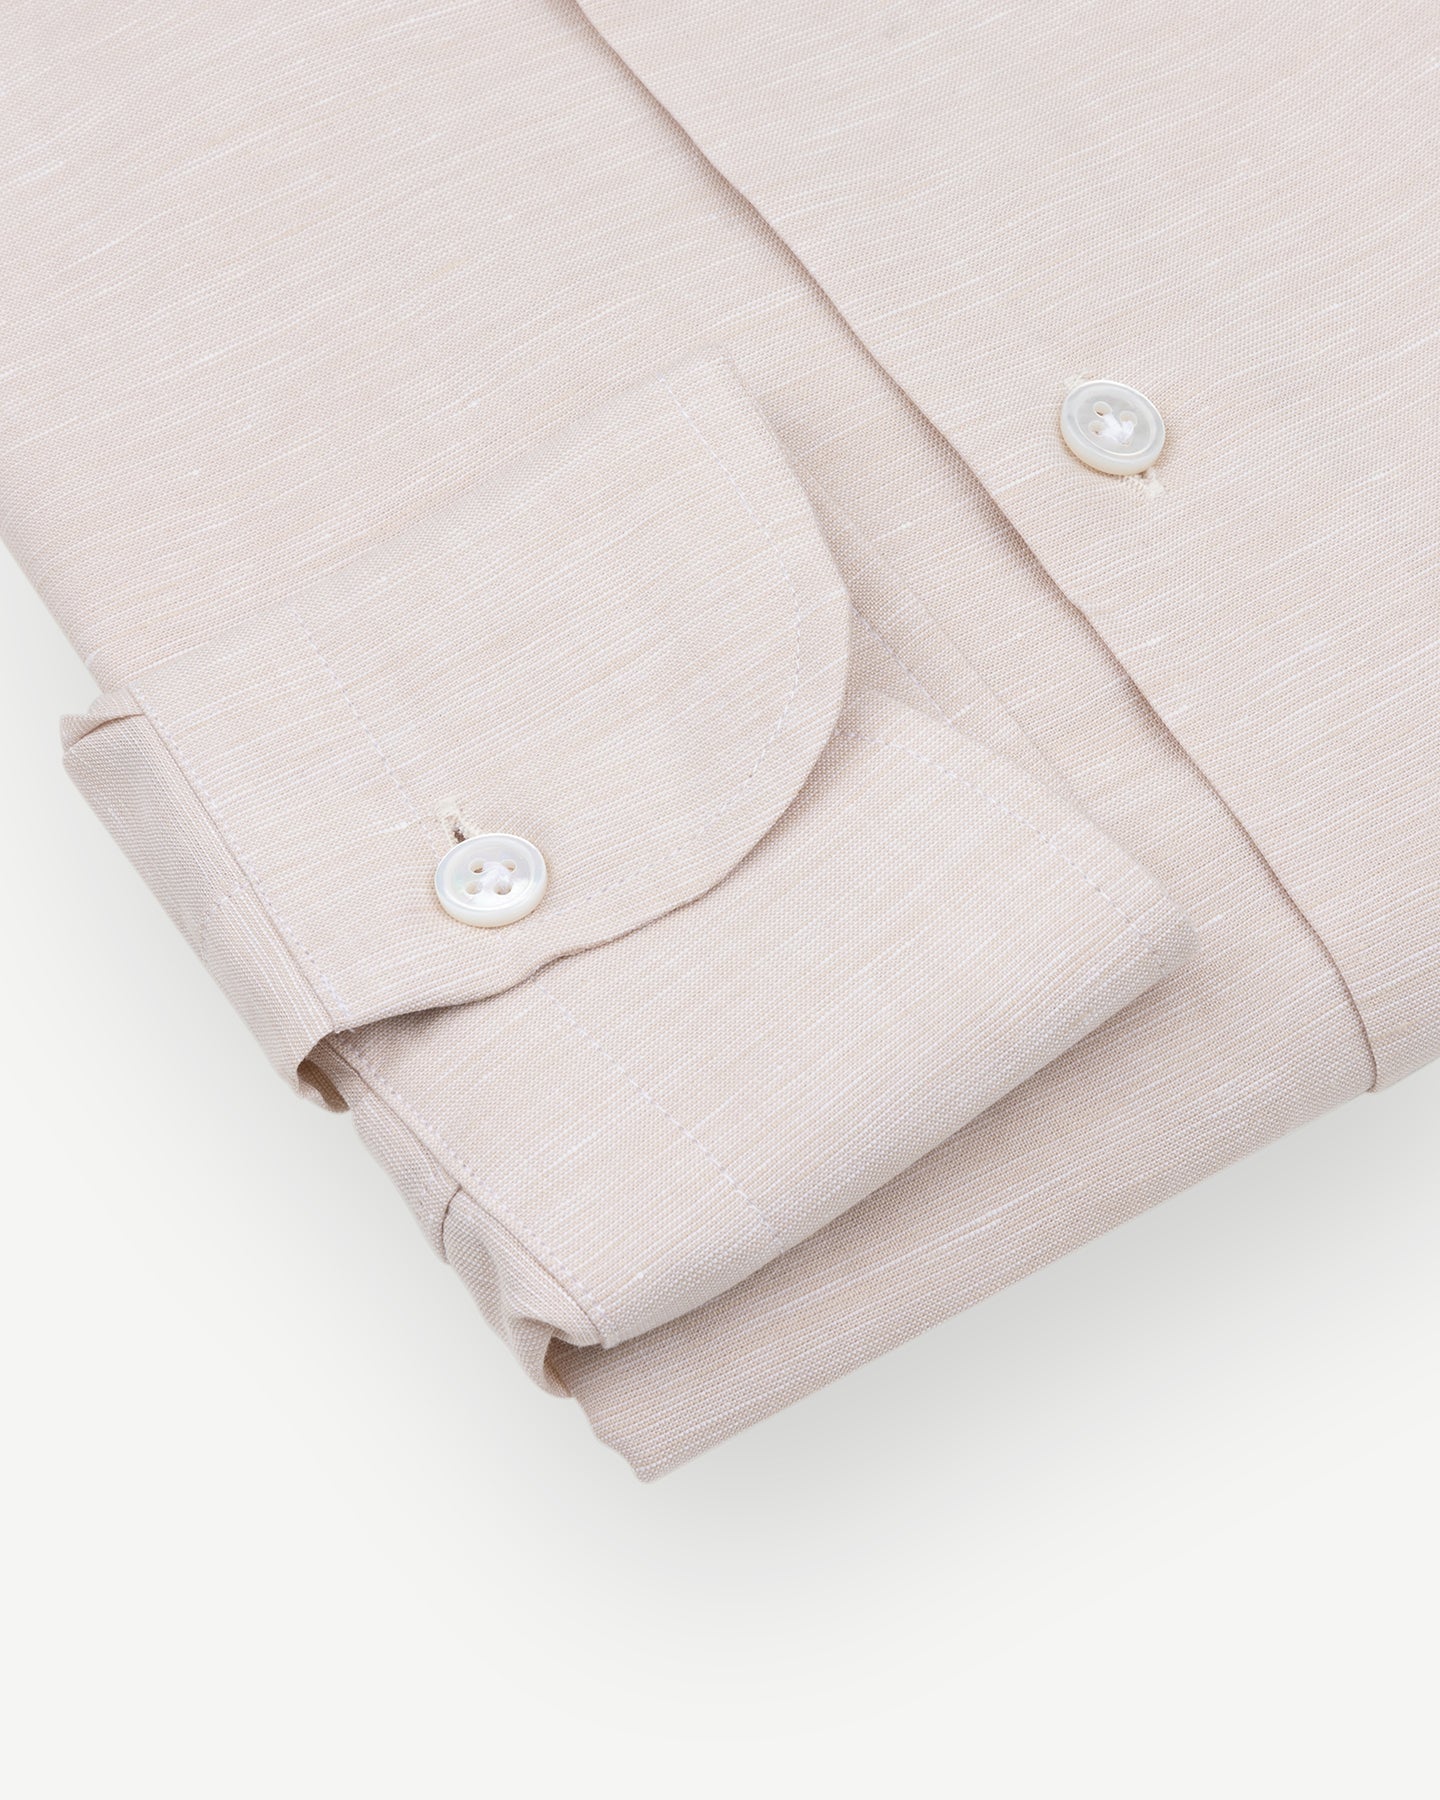 Beige cotton linen dress shirt with single cuffs